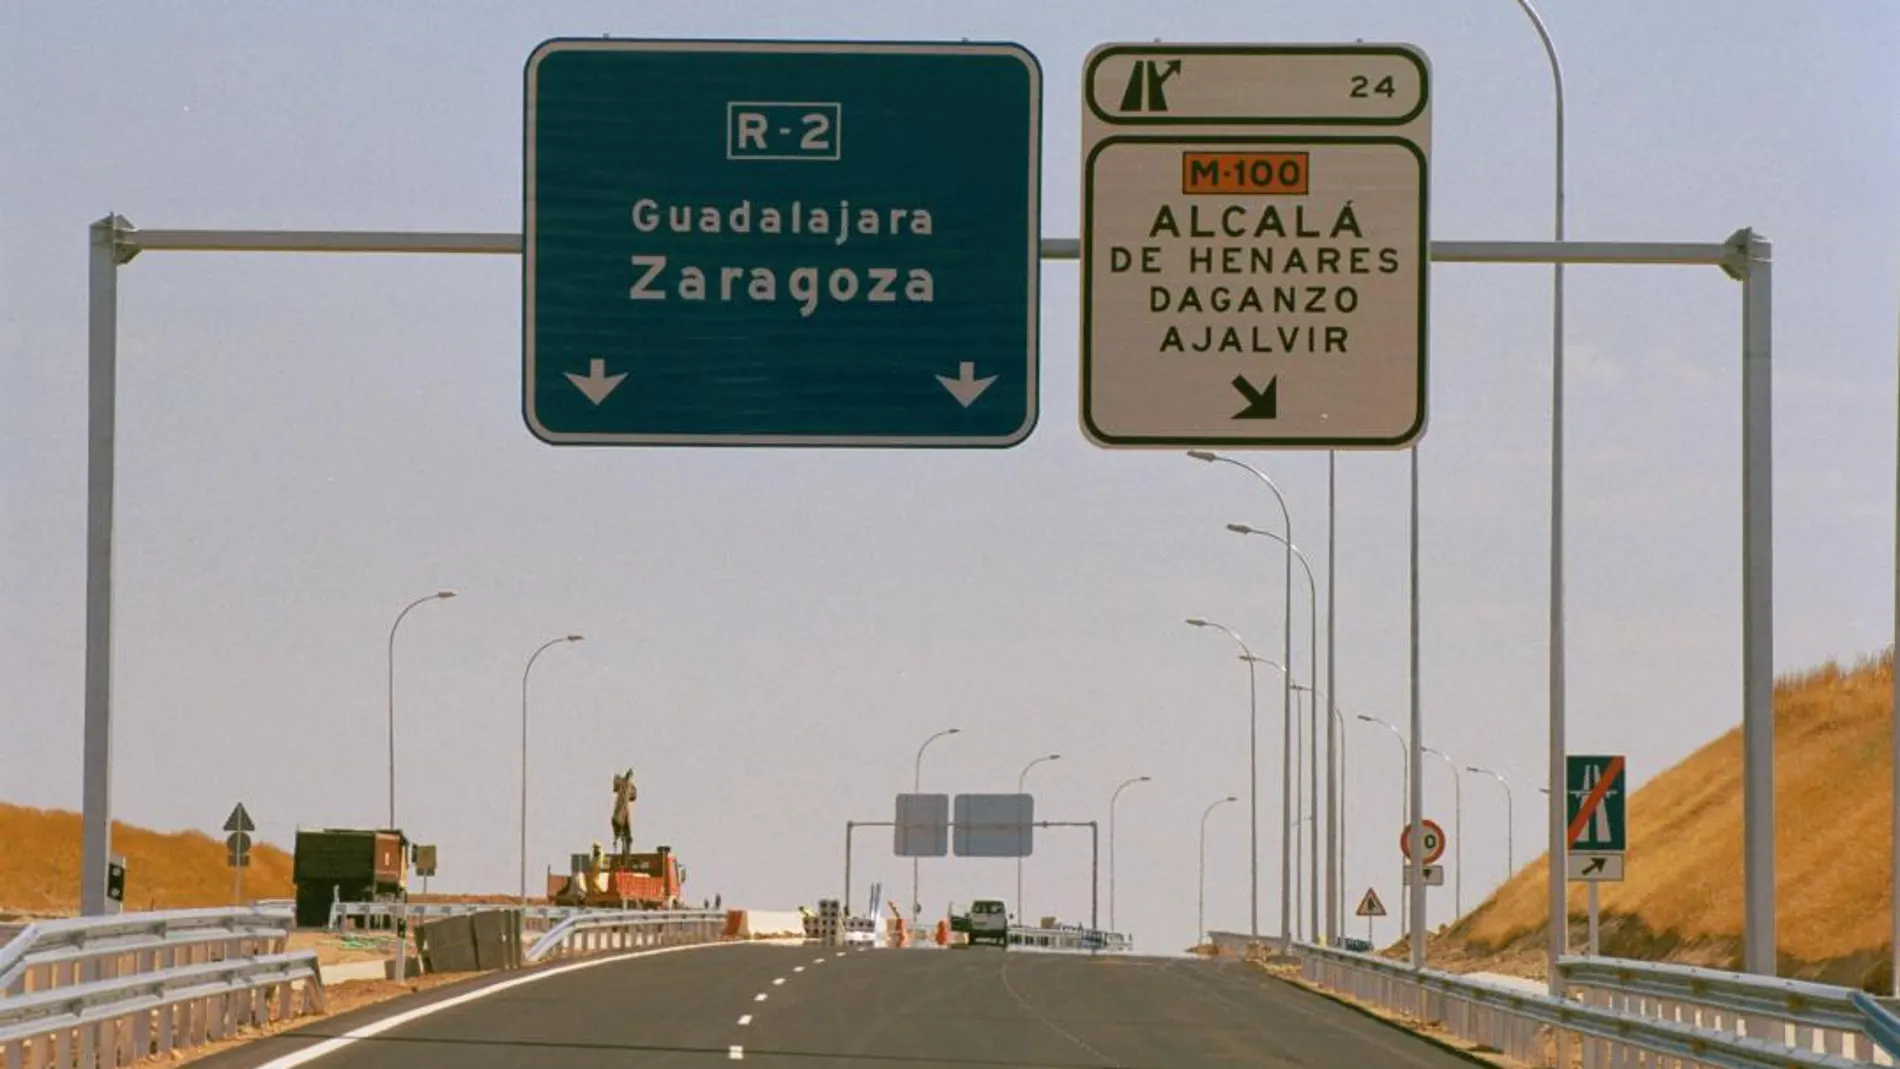 La R-2 Madrid-Guadalajara es una de autopistas en quiebra